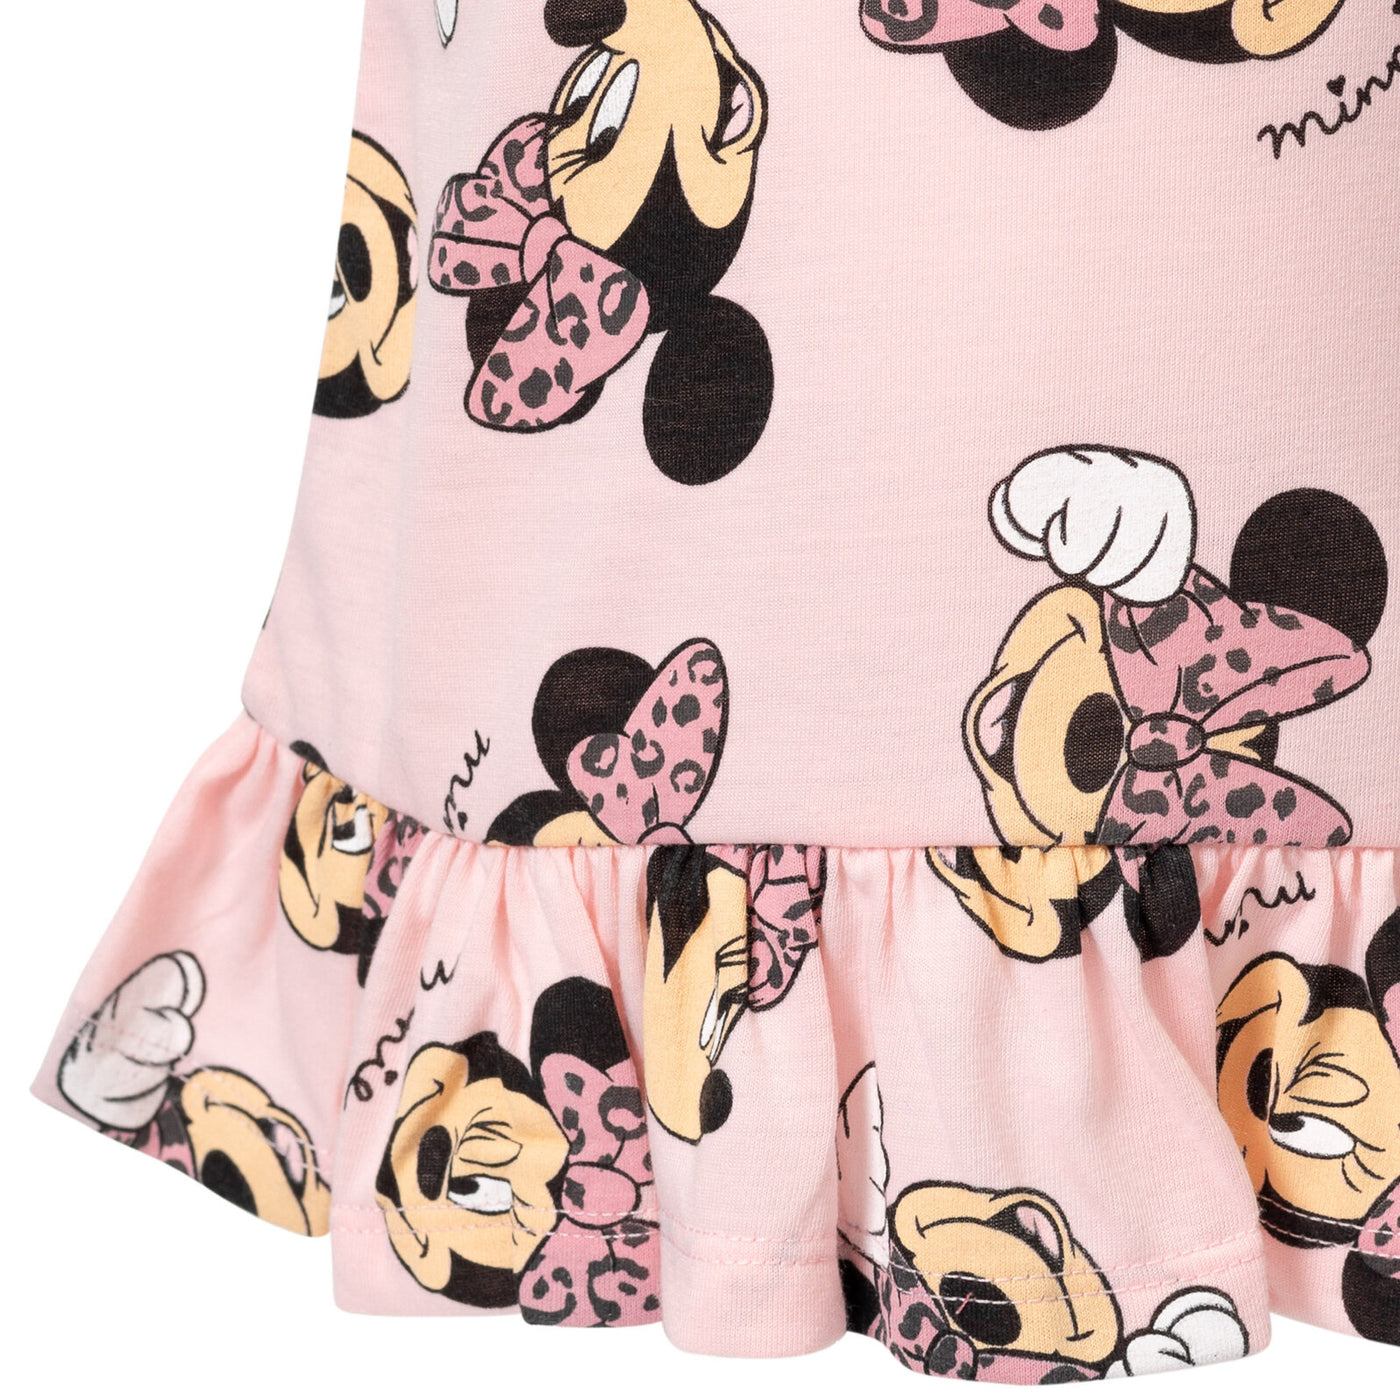 Camiseta gráfica y calzas de Minnie Mouse